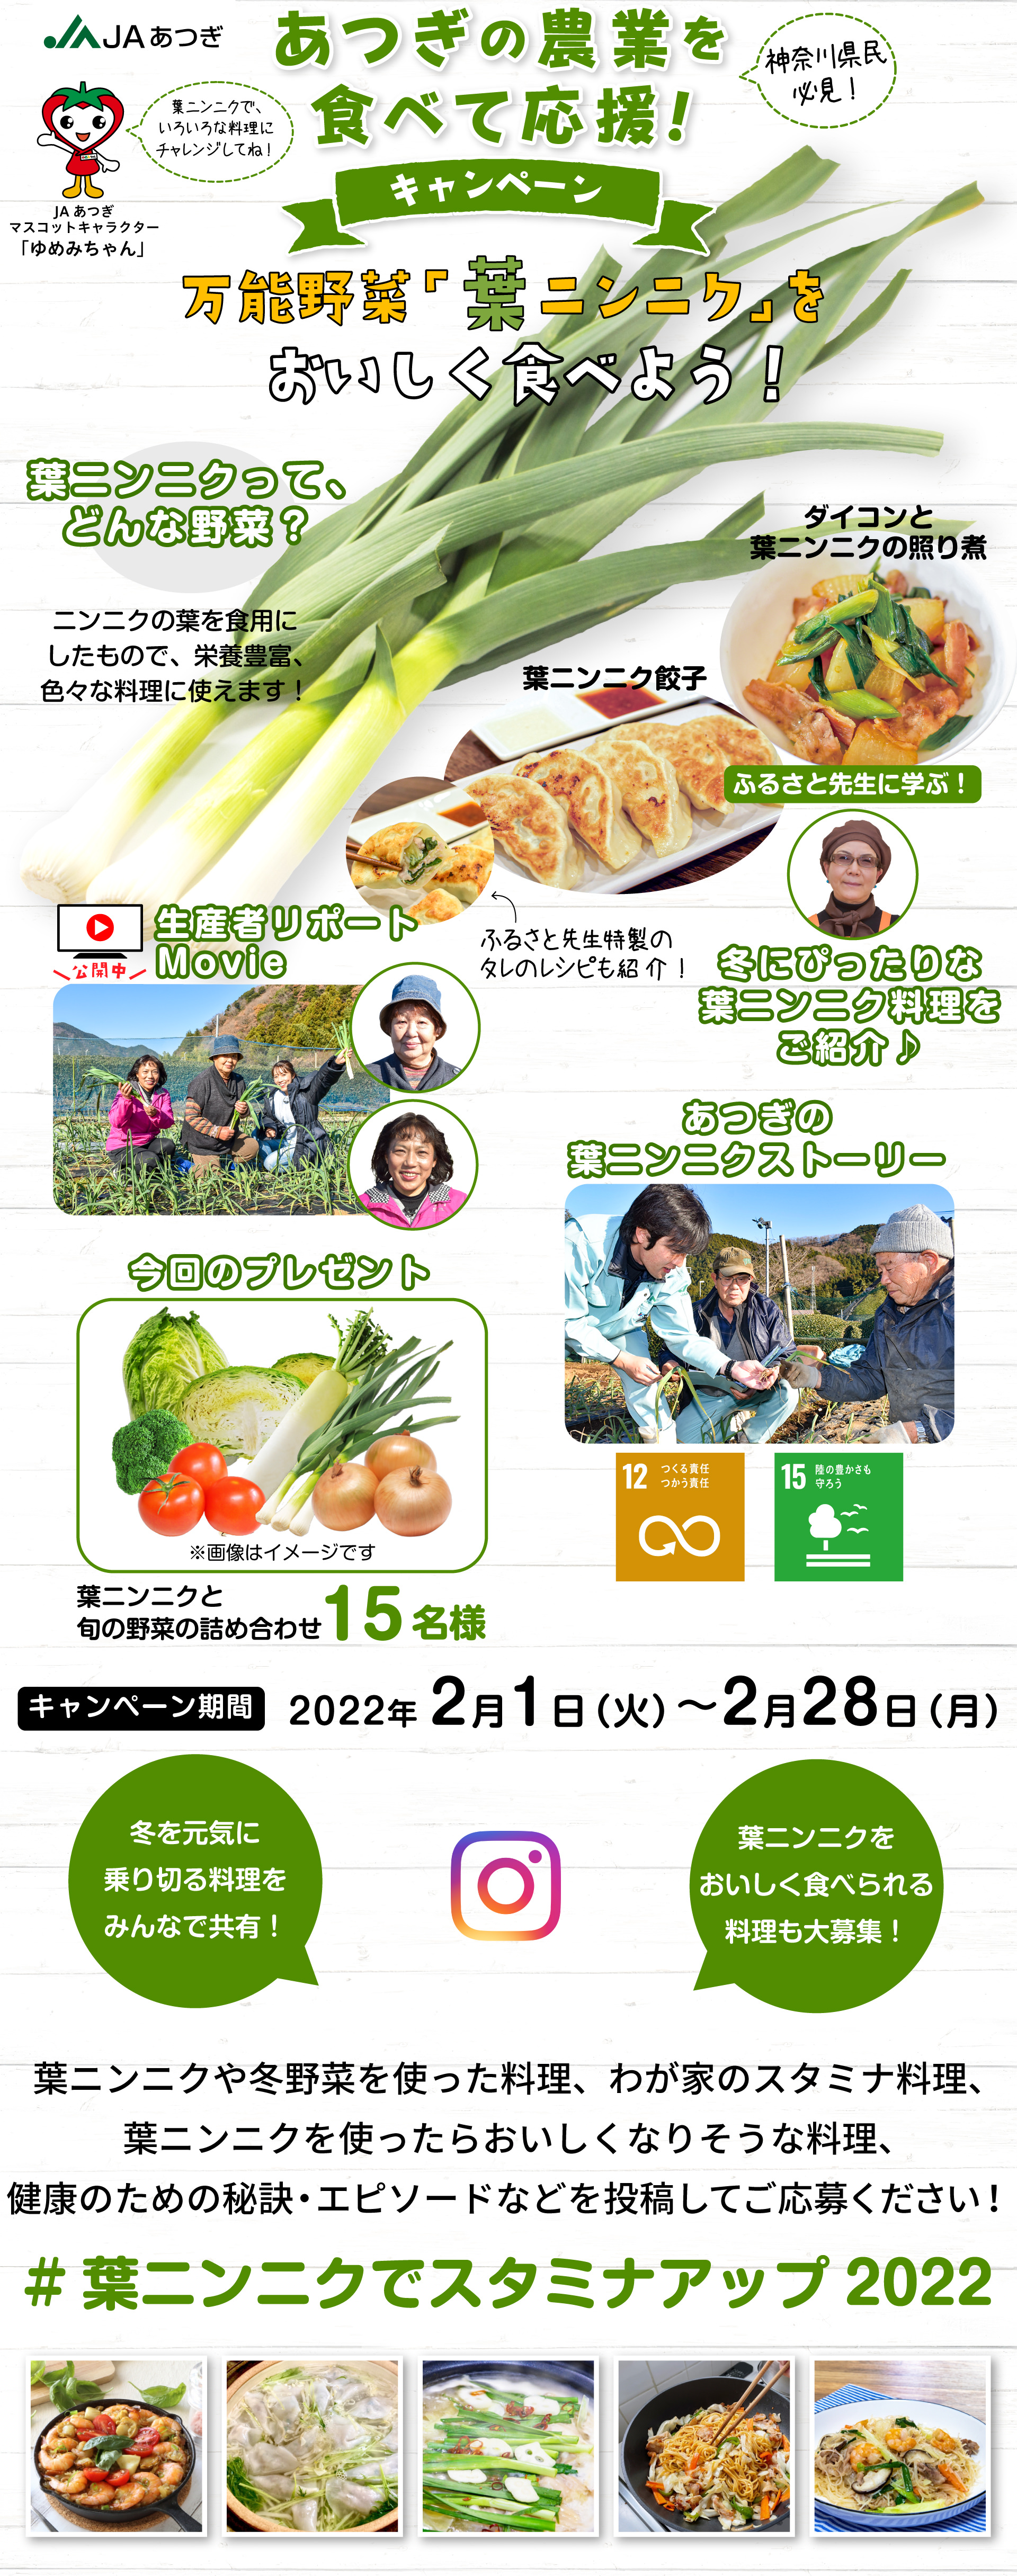 あつぎの農業を食べて応援！キャンペーン 万能野菜「葉ニンニク」をおいしく食べよう！